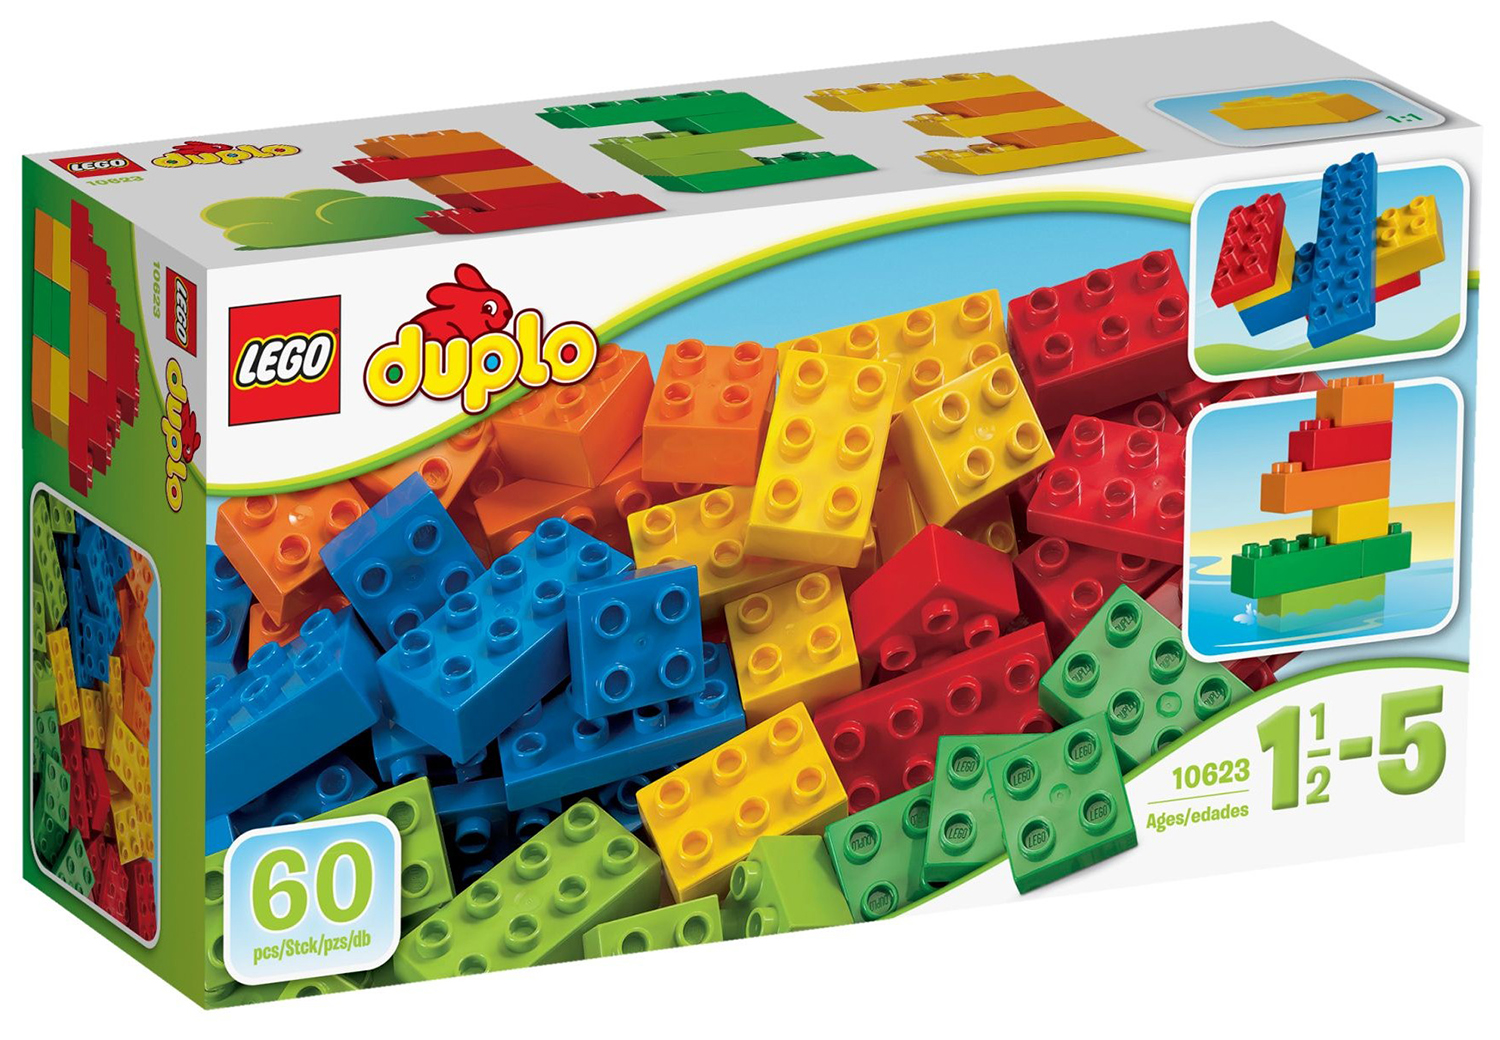 LEGO Duplo 10623 pas cher, Grande boîte de complément LEGO DUPLO